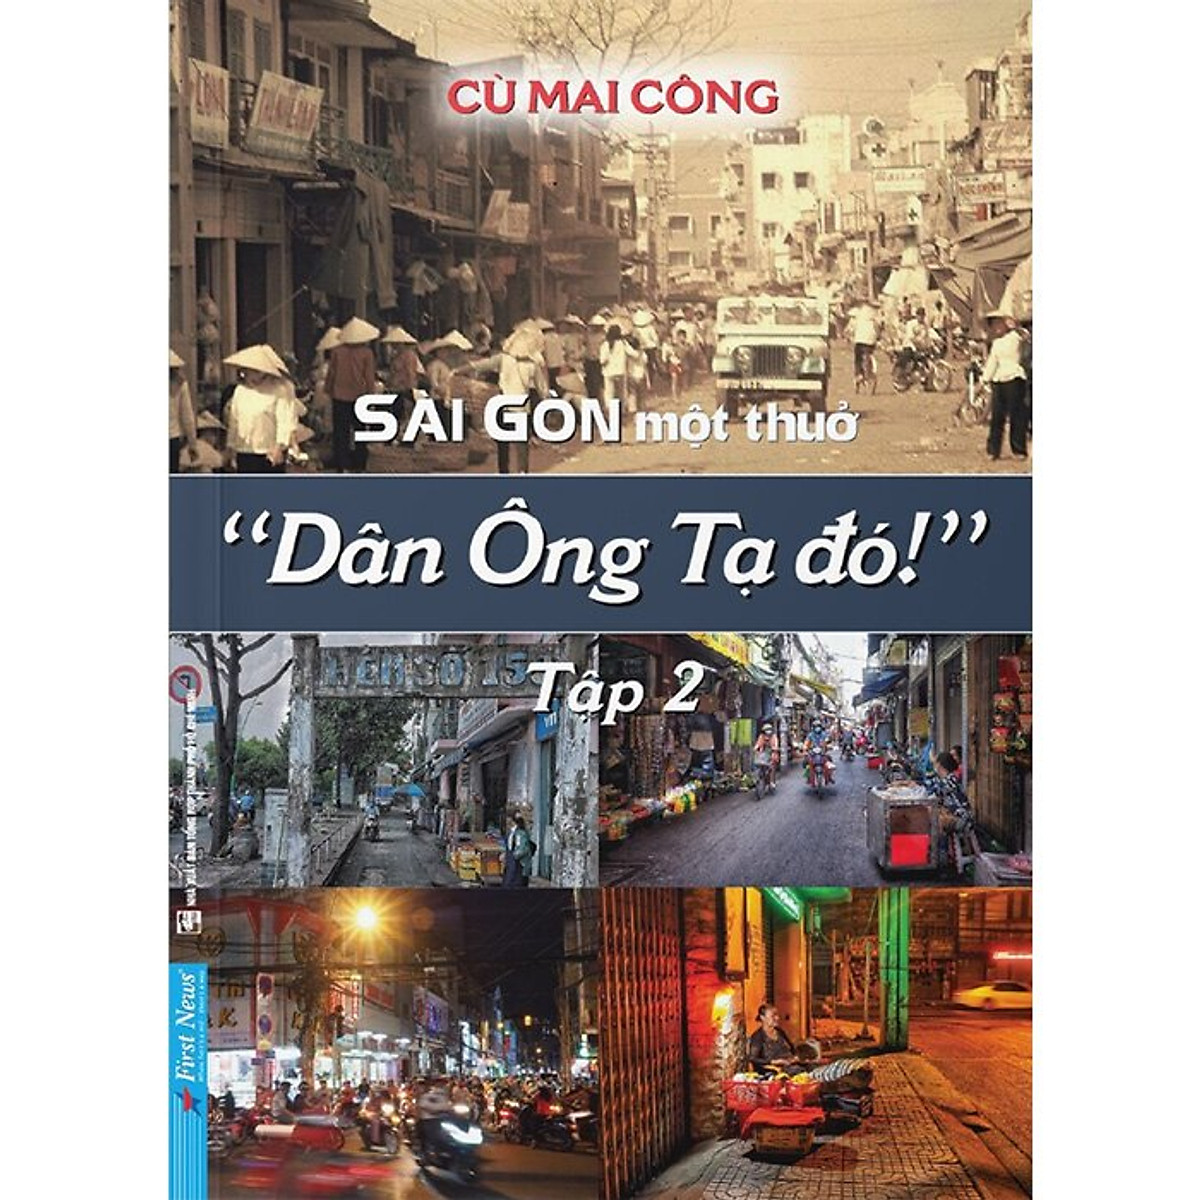 Sài Gòn Một Thuở "Dân Ông Tạ Đó!" - Tập 2